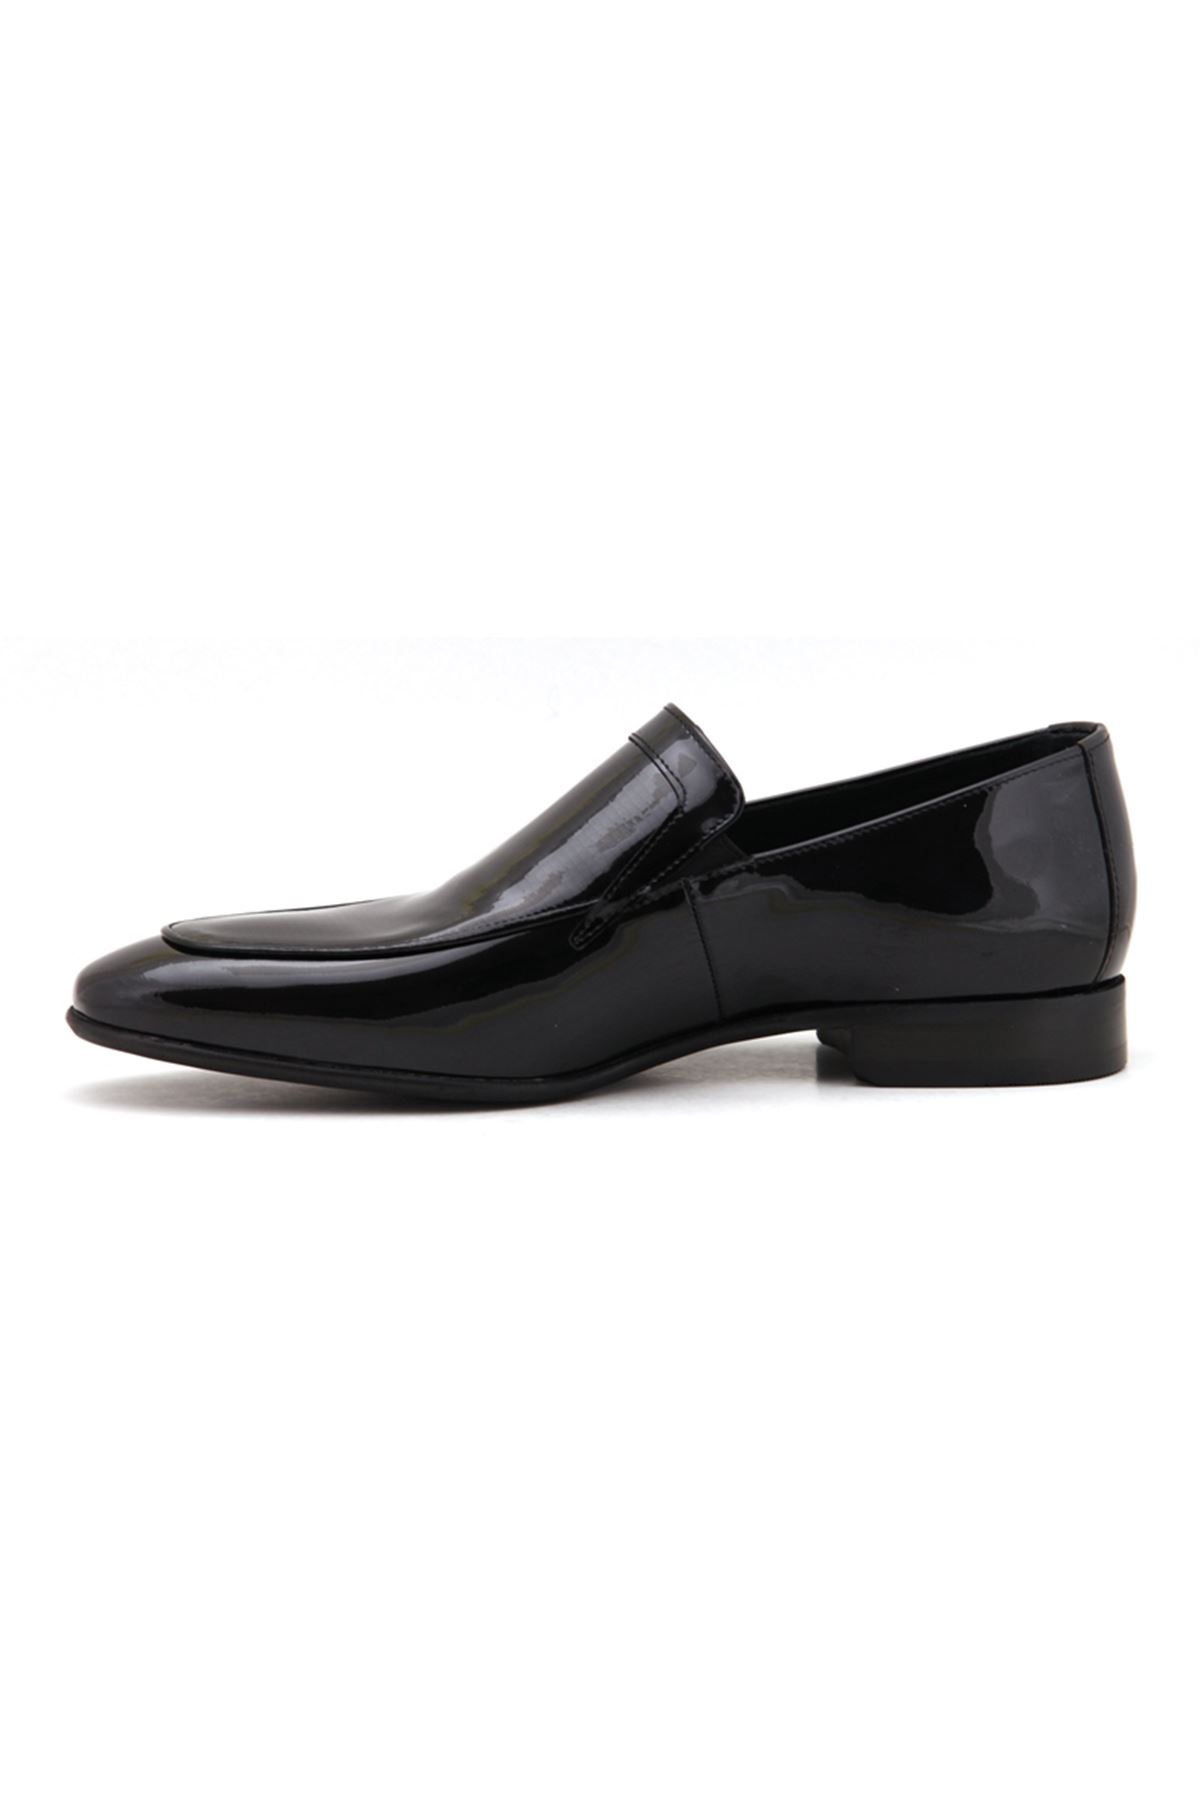 Libero 3739 Deri Klasik Erkek Ayakkabı - Siyah Rugan